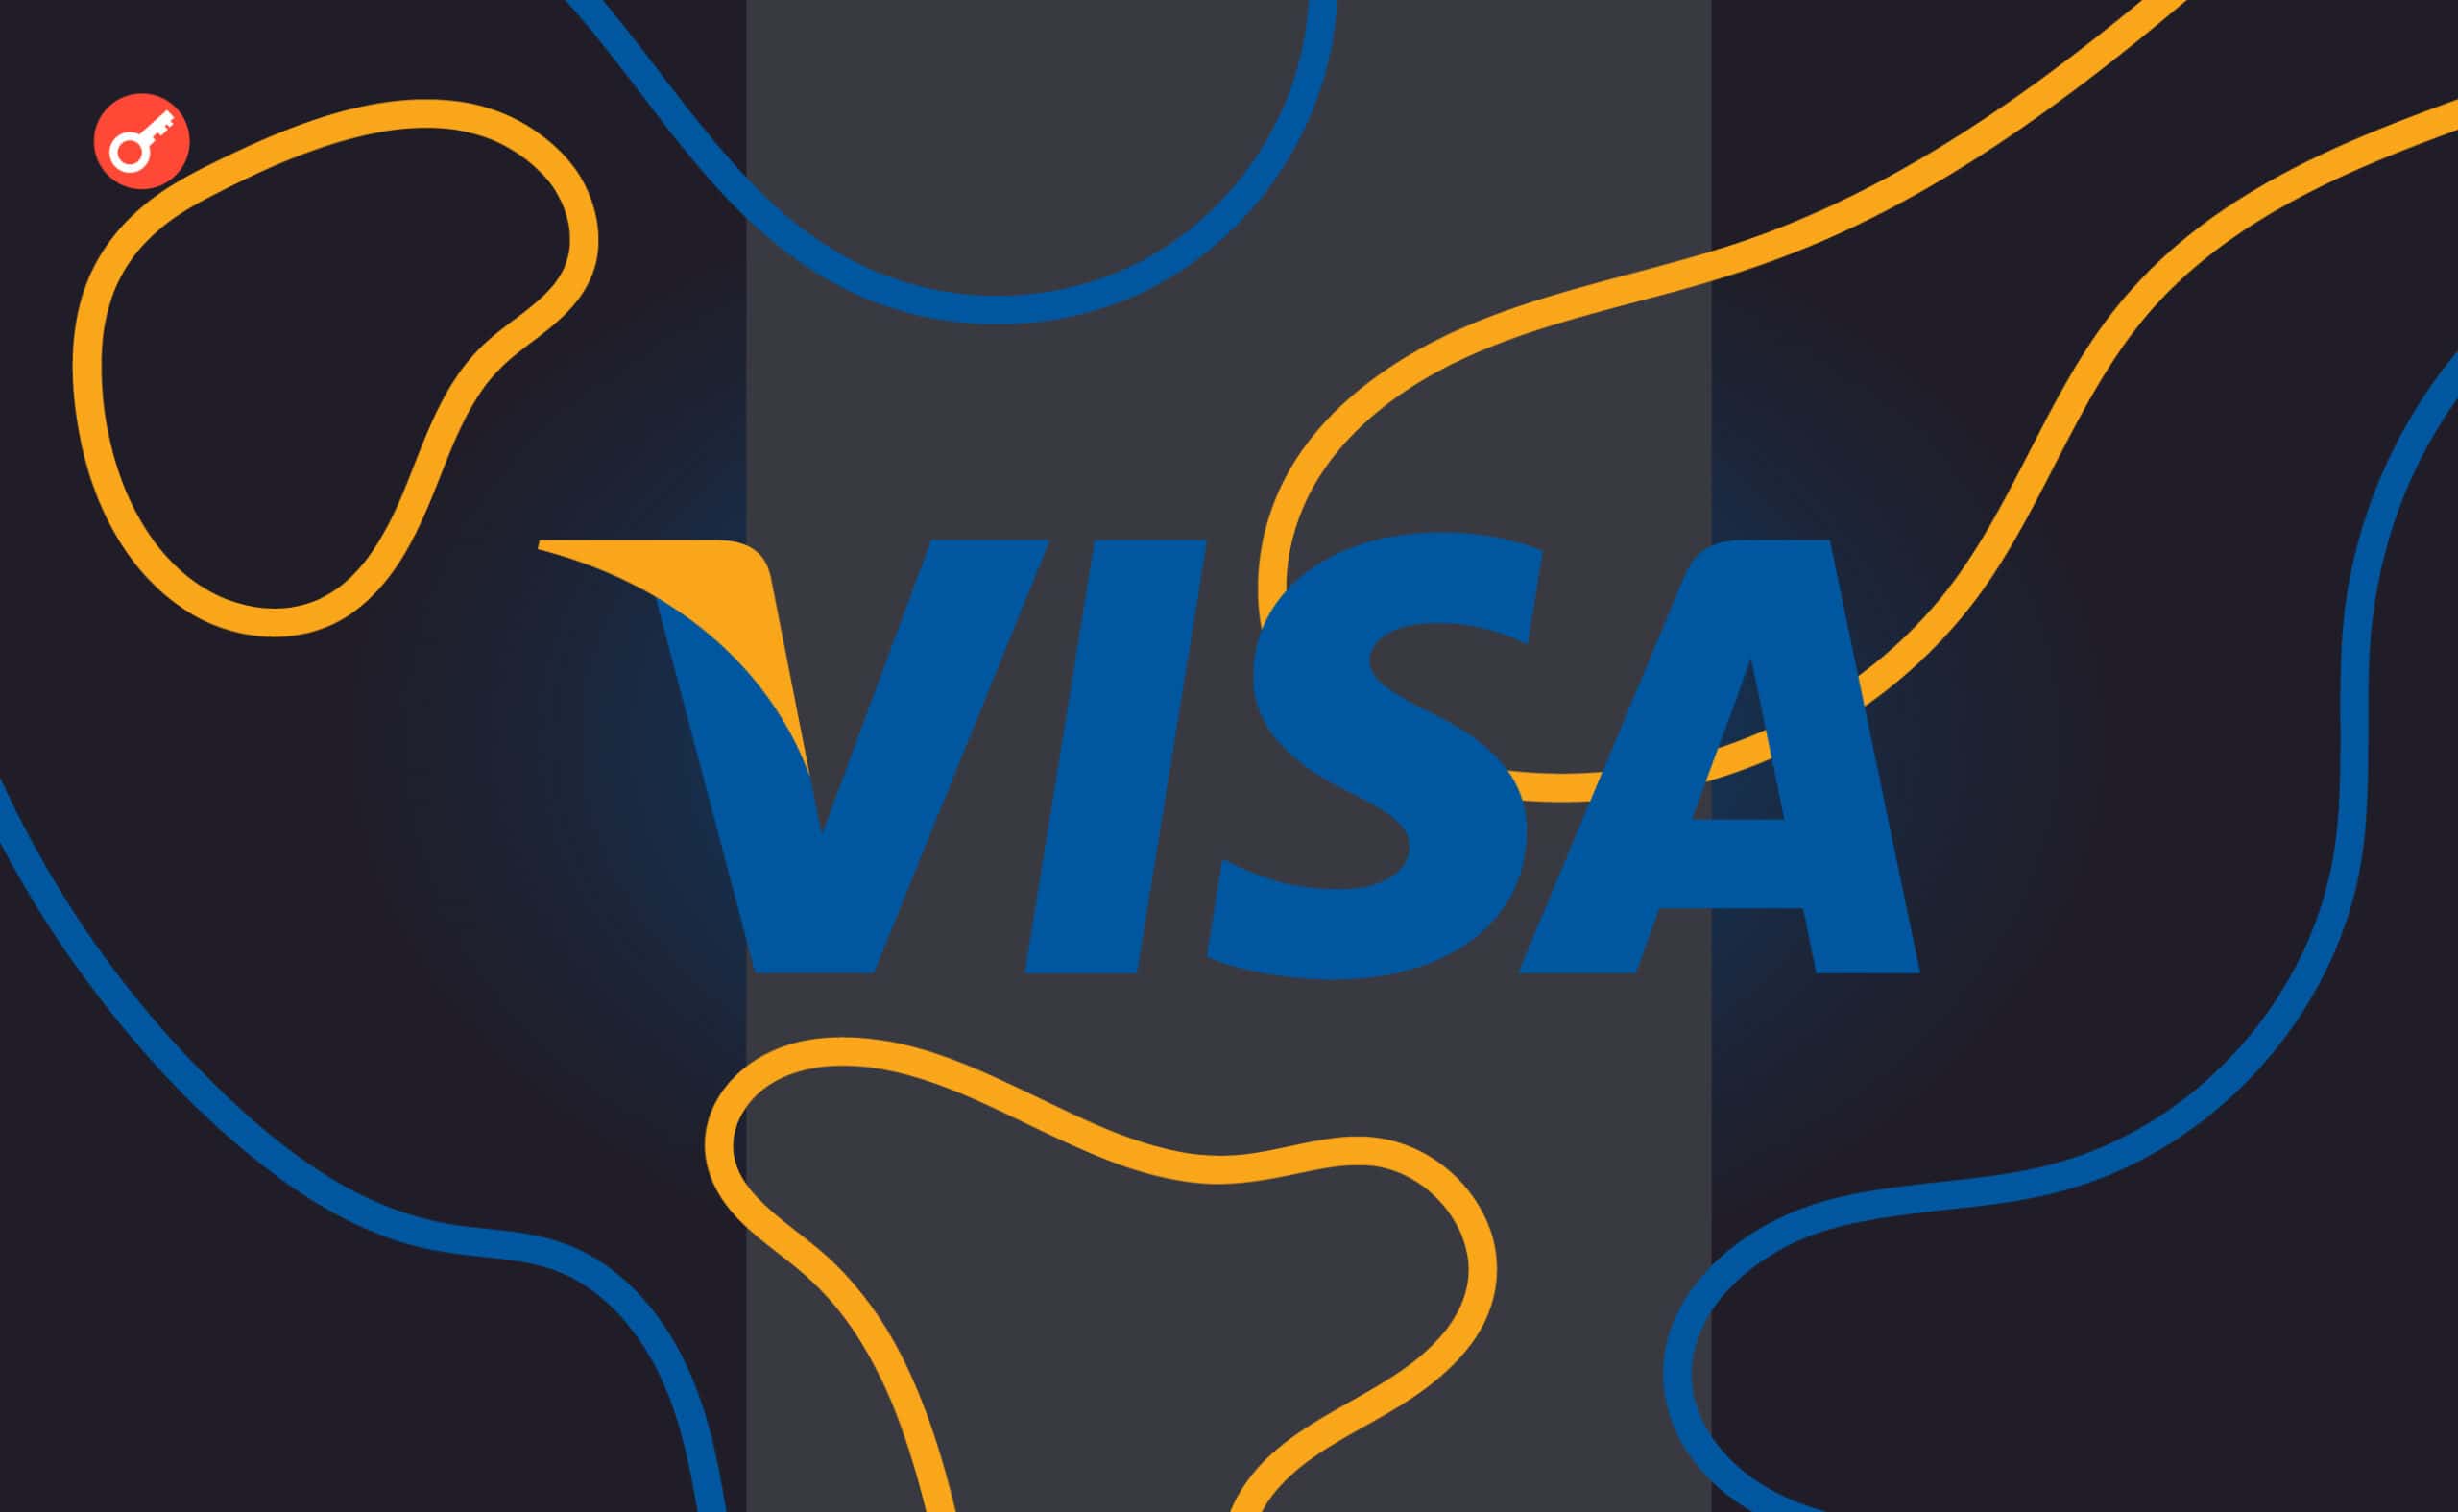 Visa запустила концепт платформи для токенізації продукції малого та середнього бізнесу в Бразилії. Головний колаж новини.